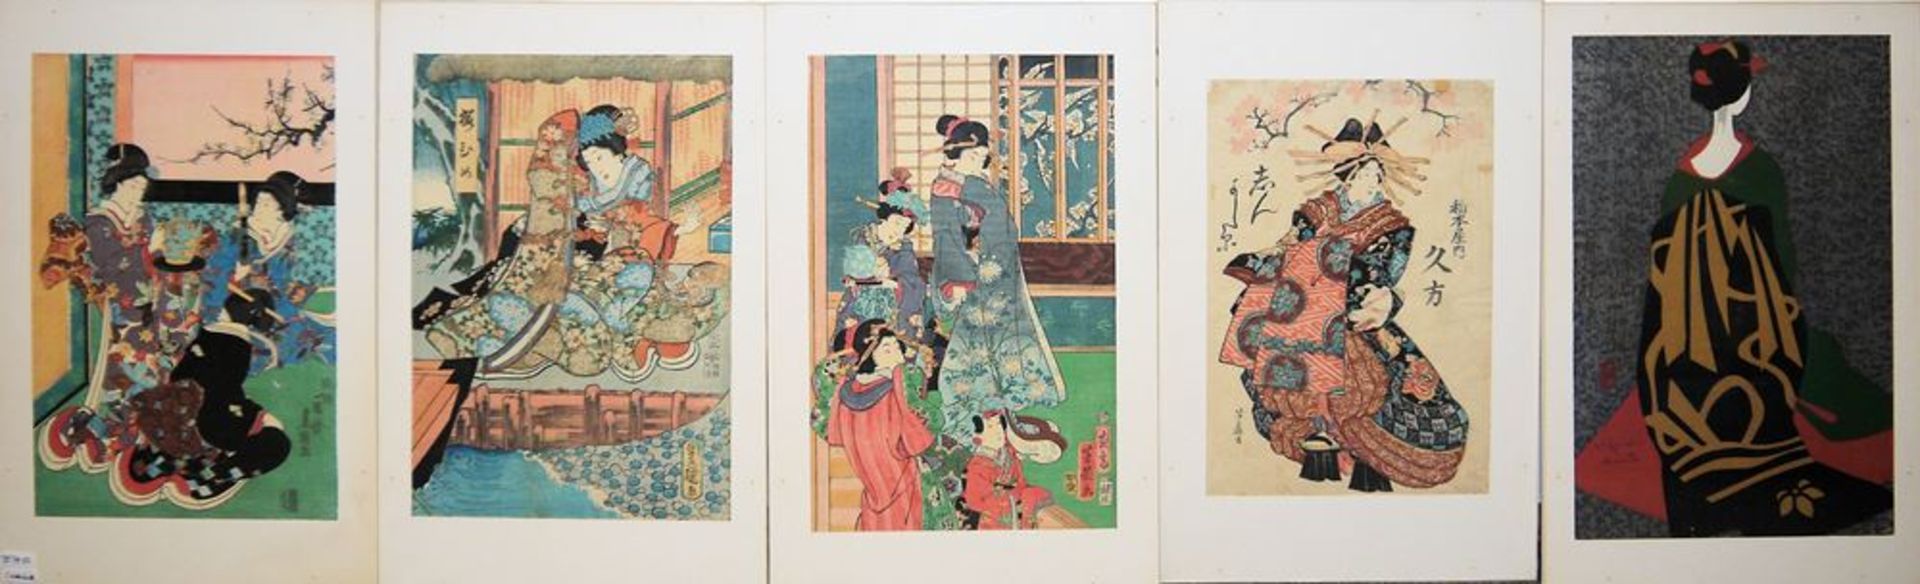 Schöne Damen, fünf japanische Farbholzschnitte des 19. & 20. Jhs.